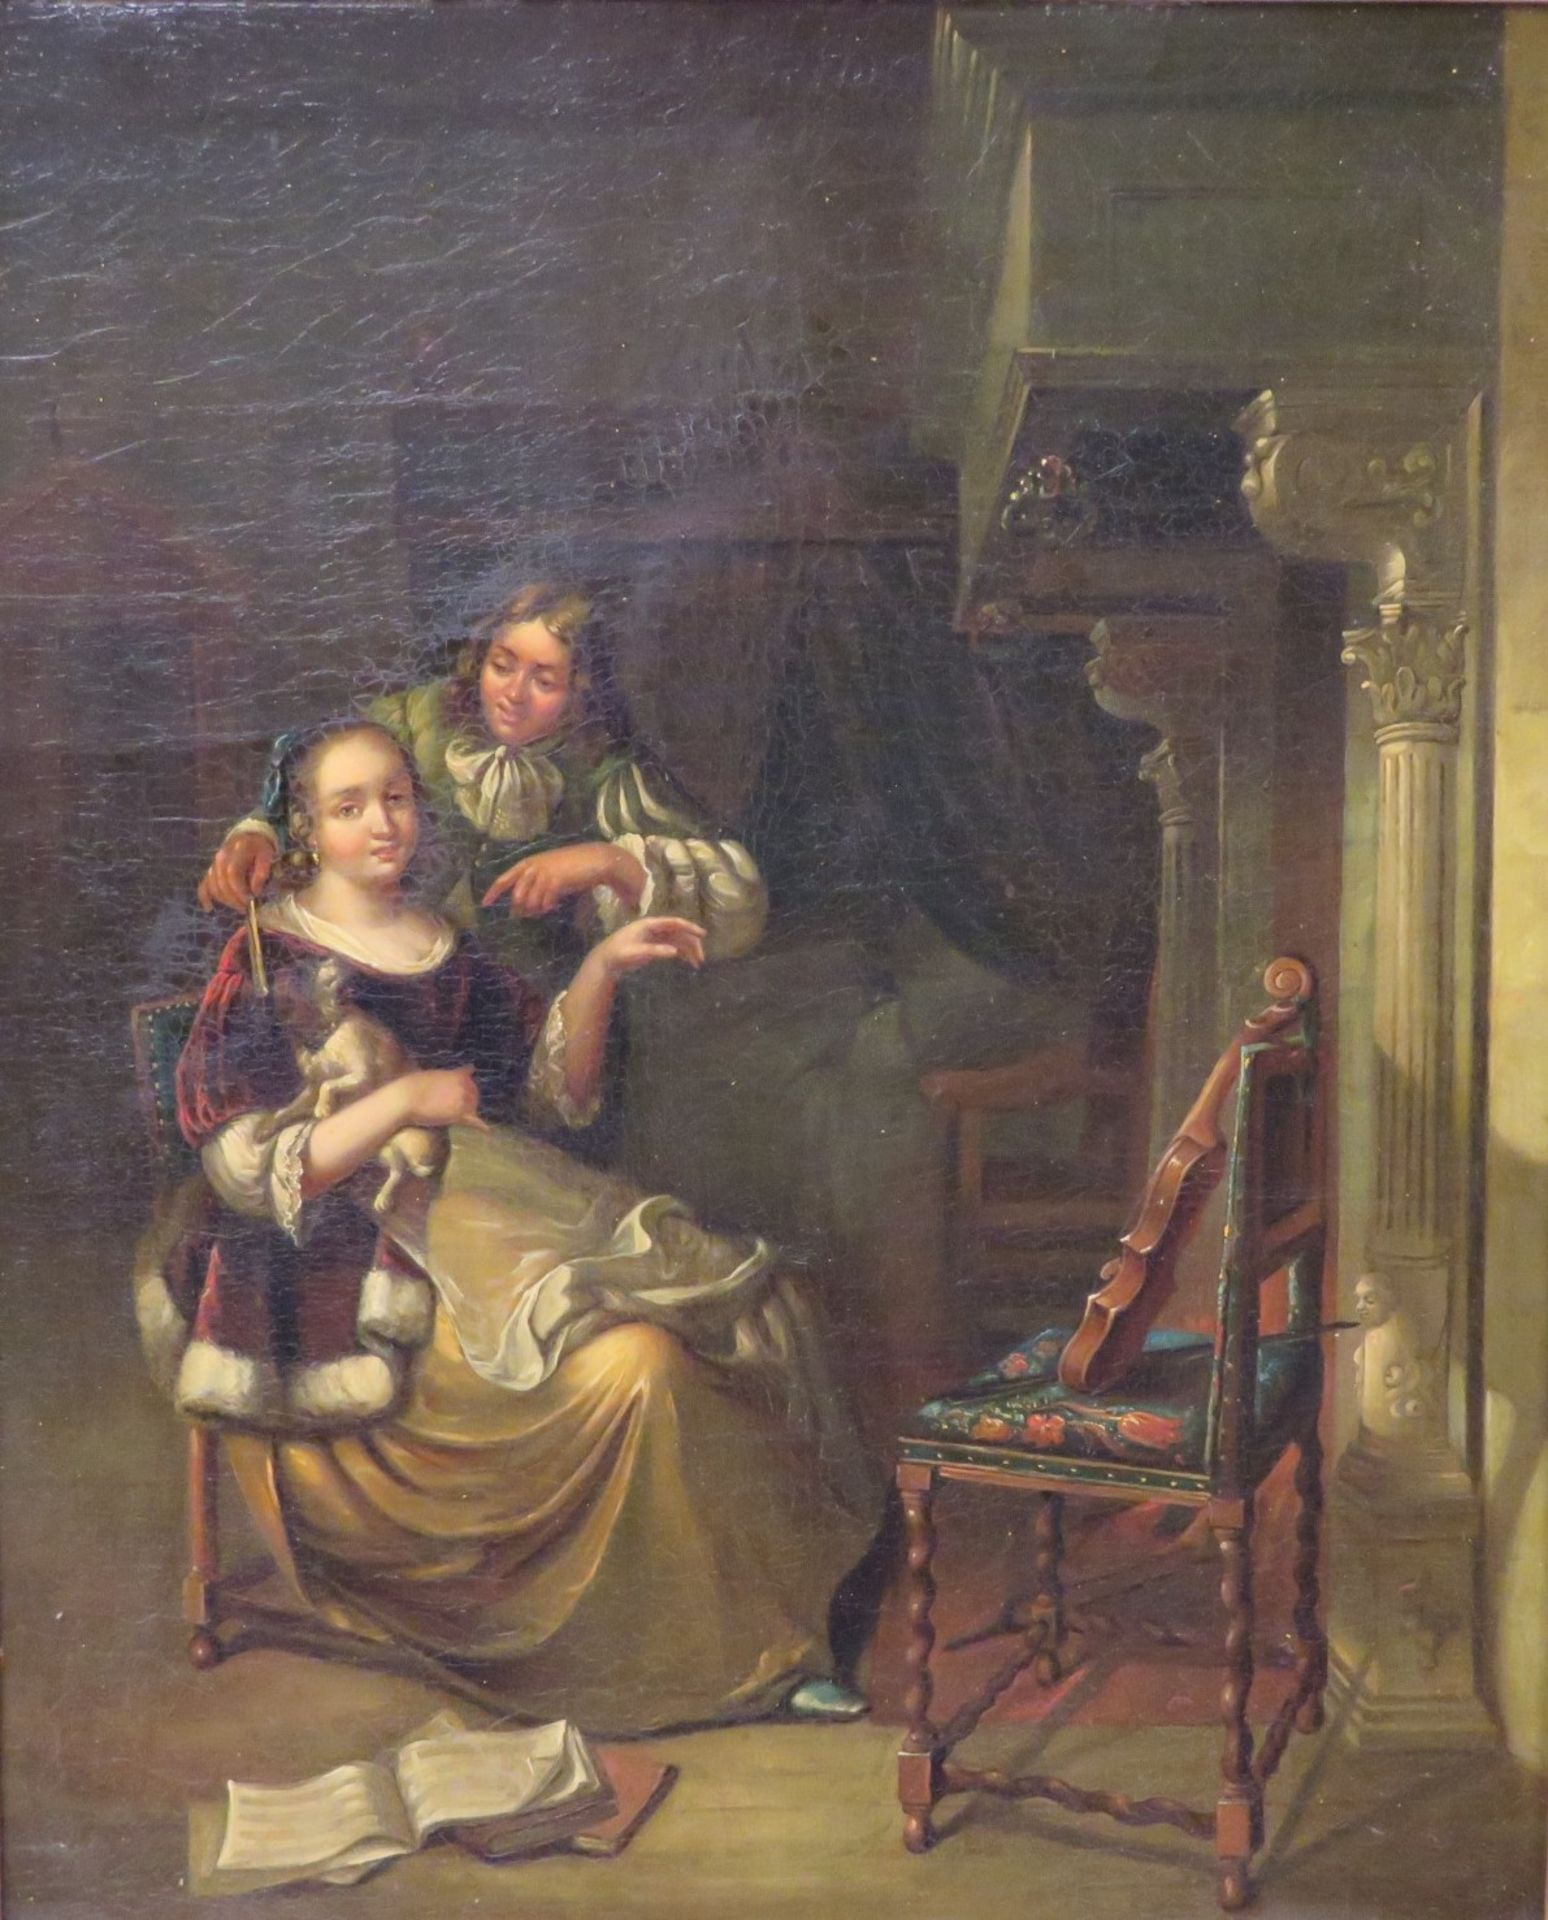 Unbekannt in der Art Gerard ter Borchs/Terborchs (1617 - 1681, Zwolle - Deventer), 19. Jahrhundert,